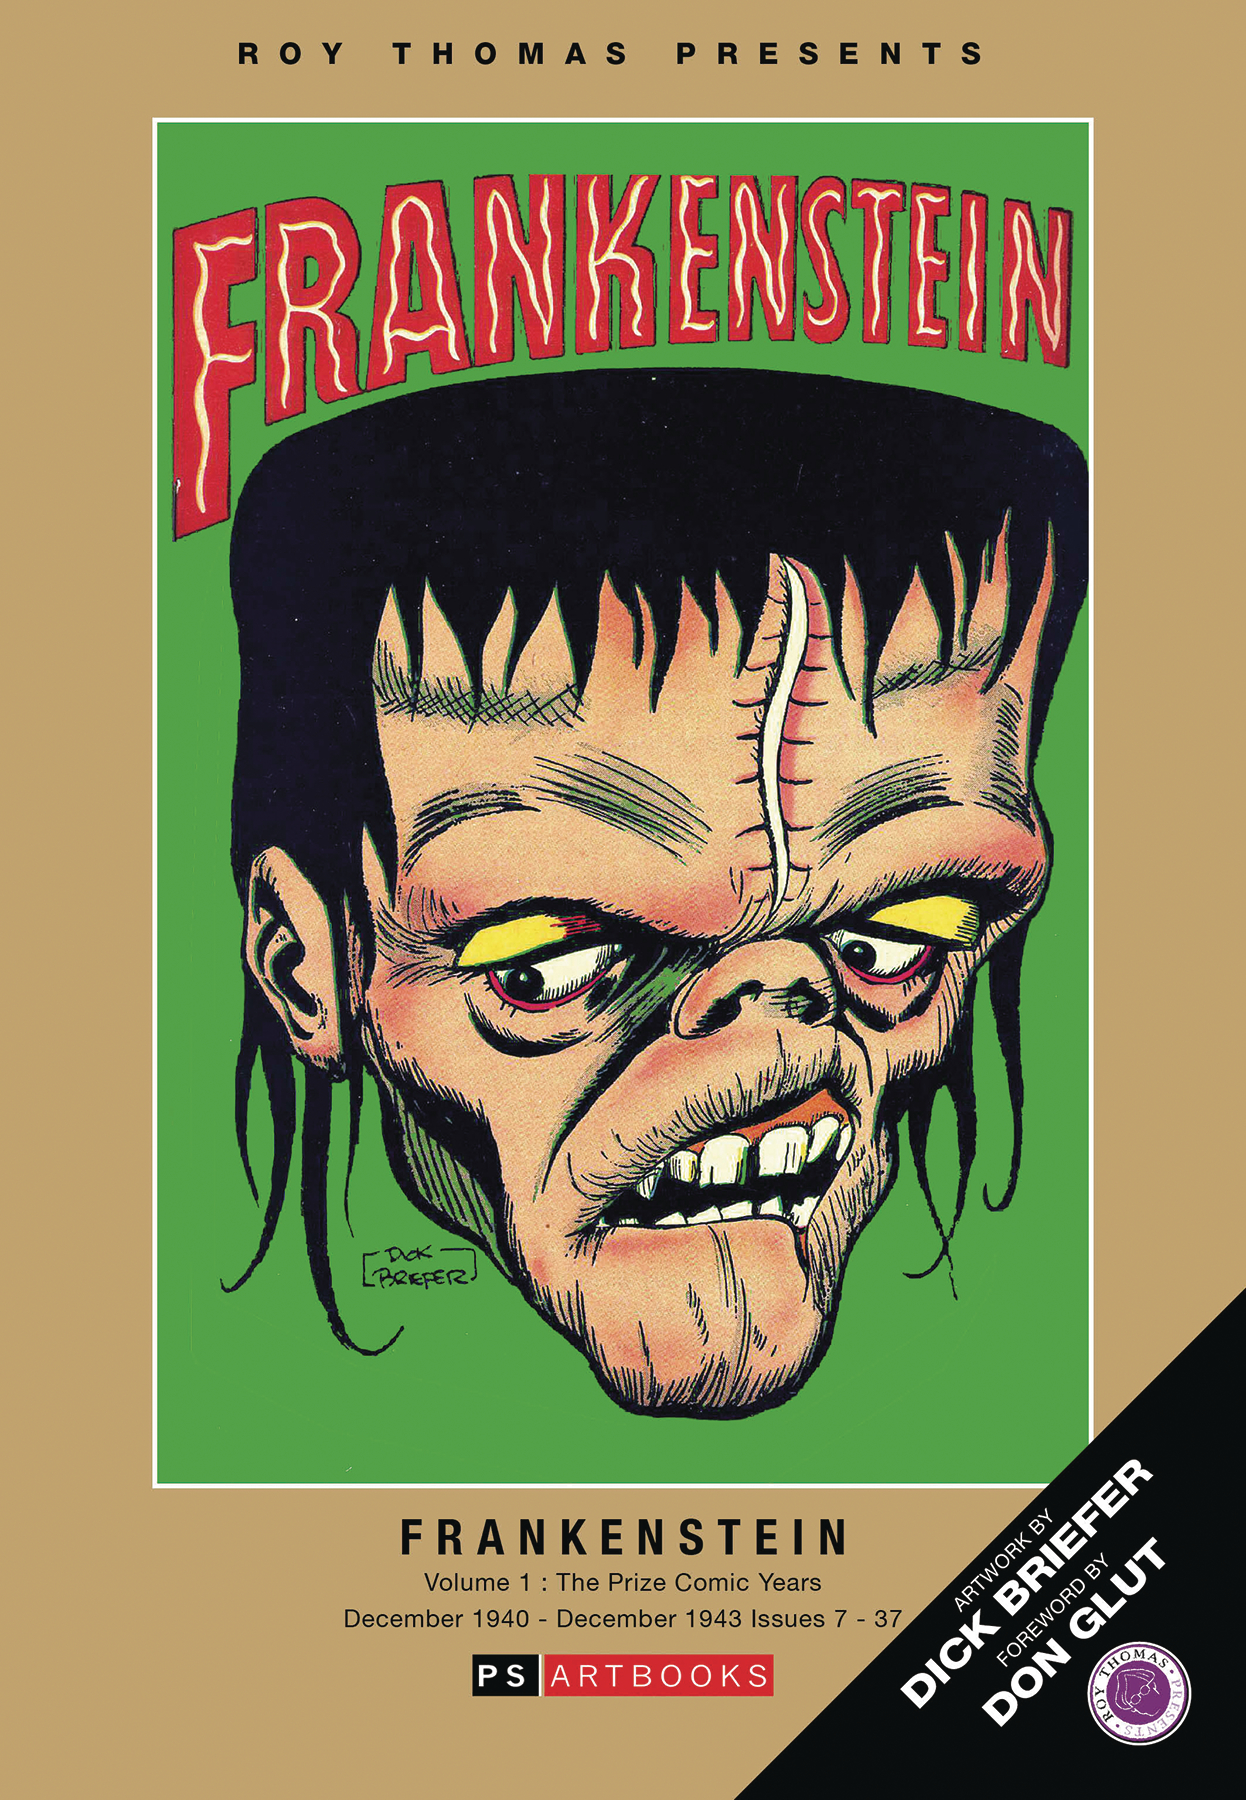 Roy Thomas Presents Briefer Frankenstein Softee Volume 1